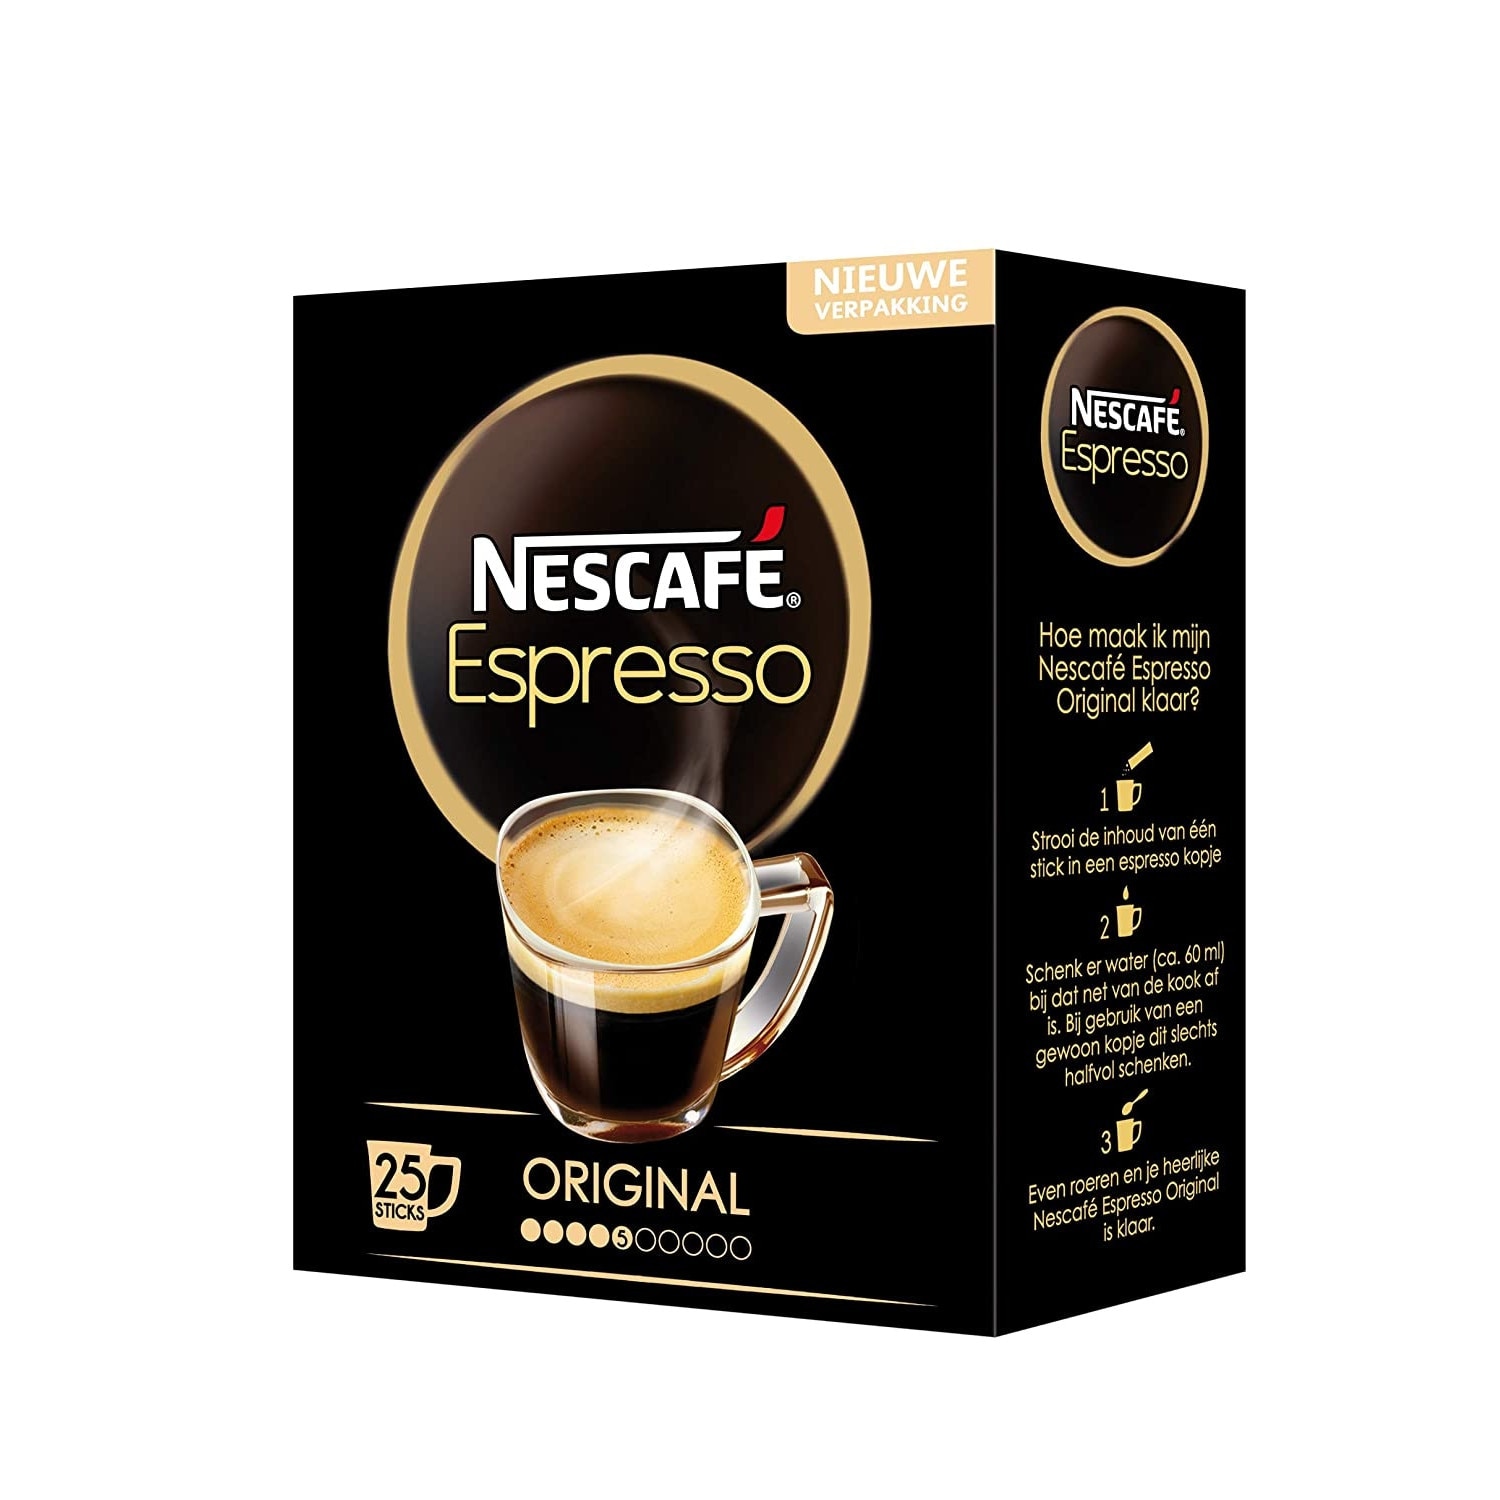 2 эспрессо. Нескафе эспрессо. Nescafe Gold Espresso. Нескафе старый дизайн. Кофе Extra Gold quality Filter.